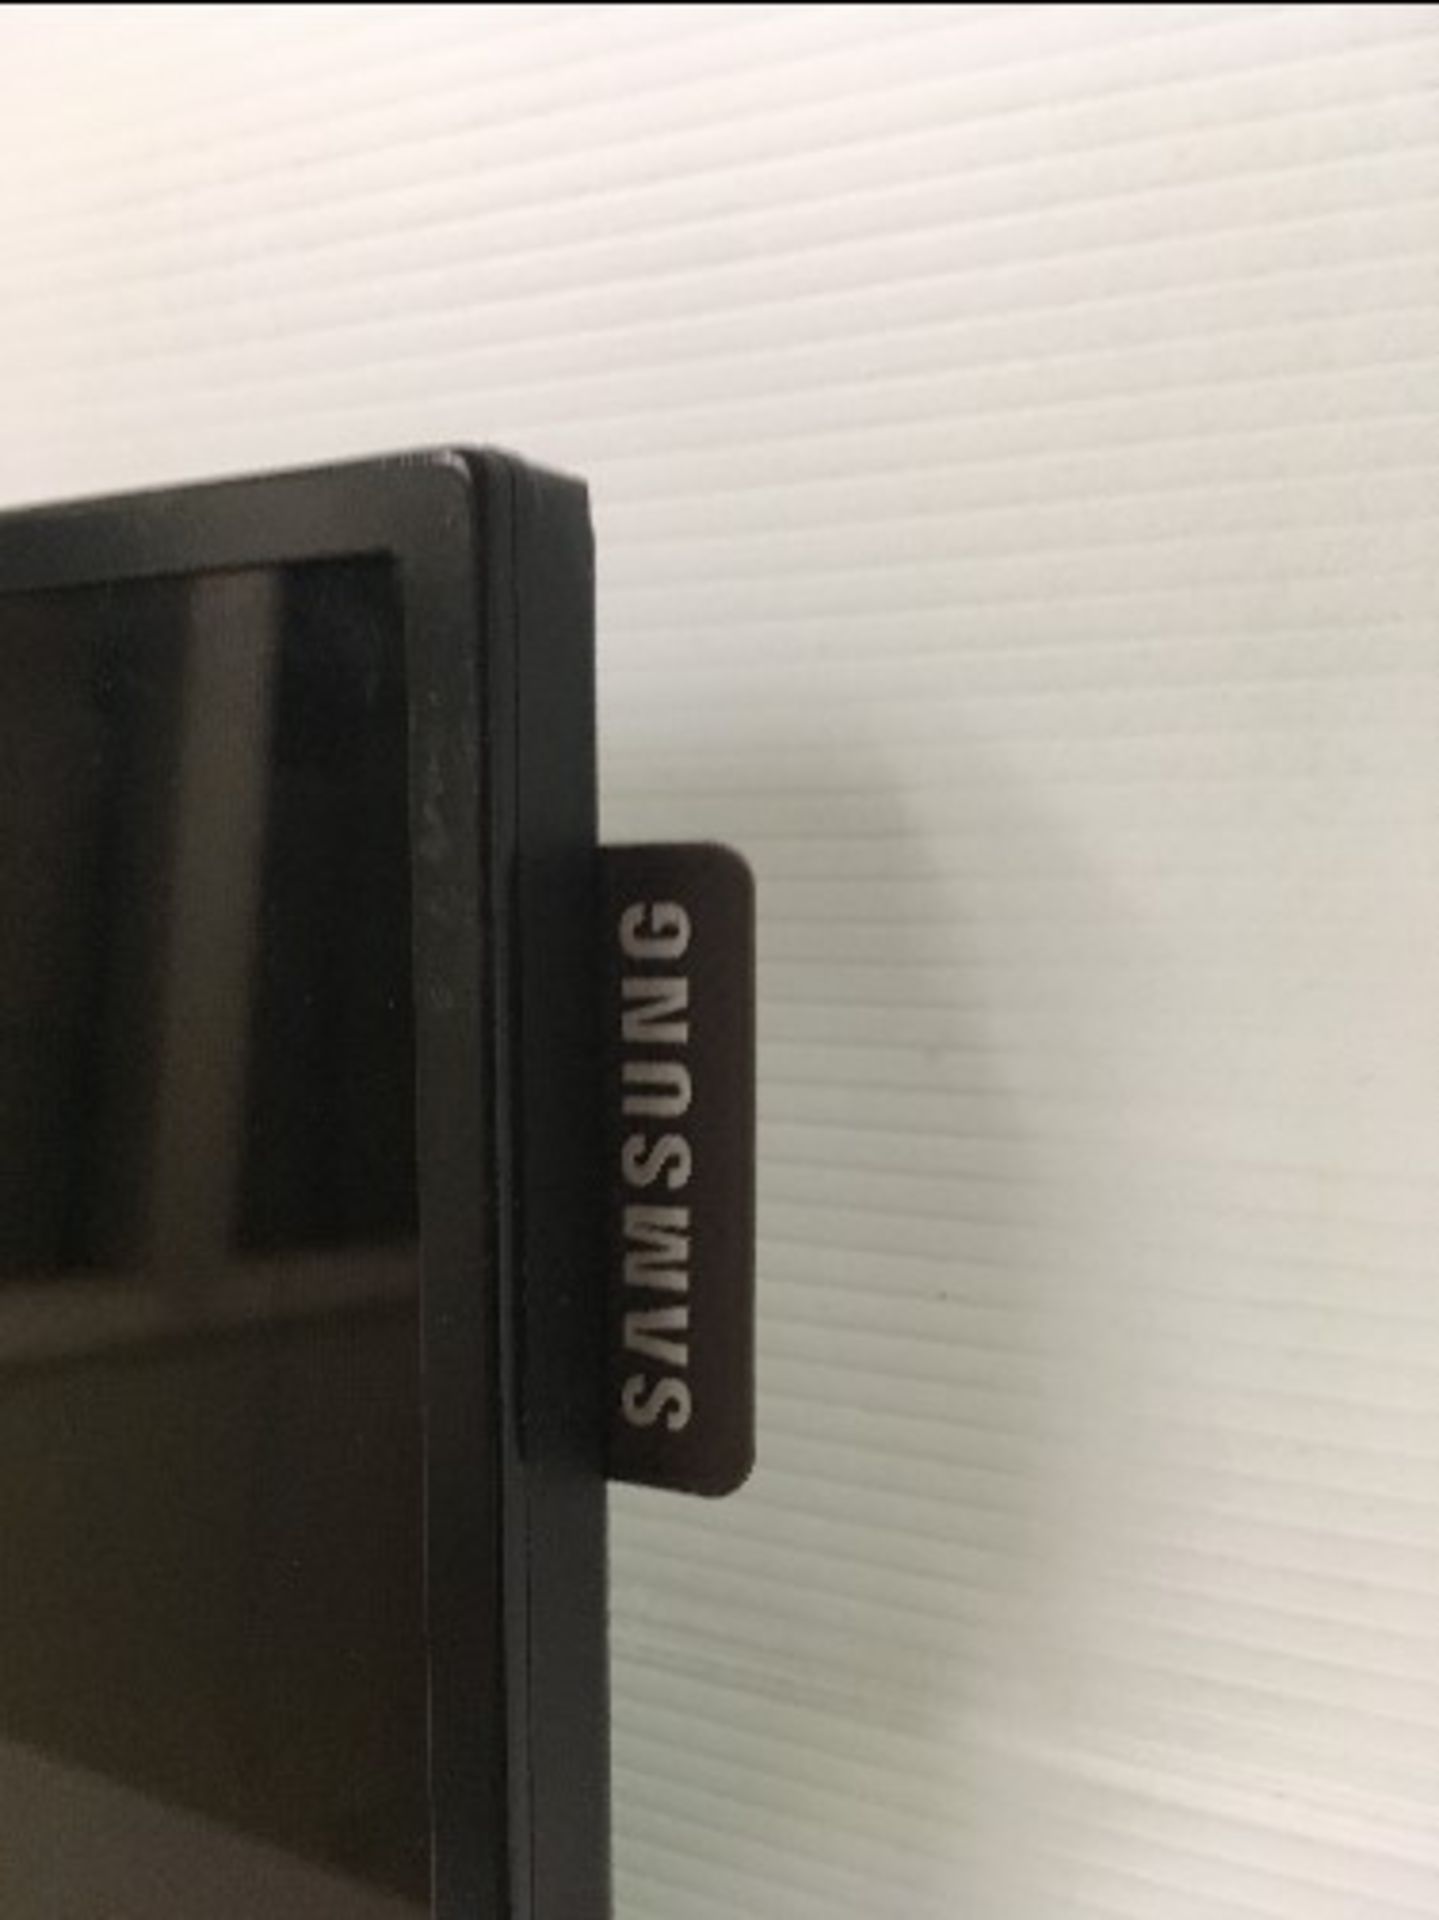 Samsung UE55D UE-D Series 55" Edge-Lit LED Display - Image 4 of 4